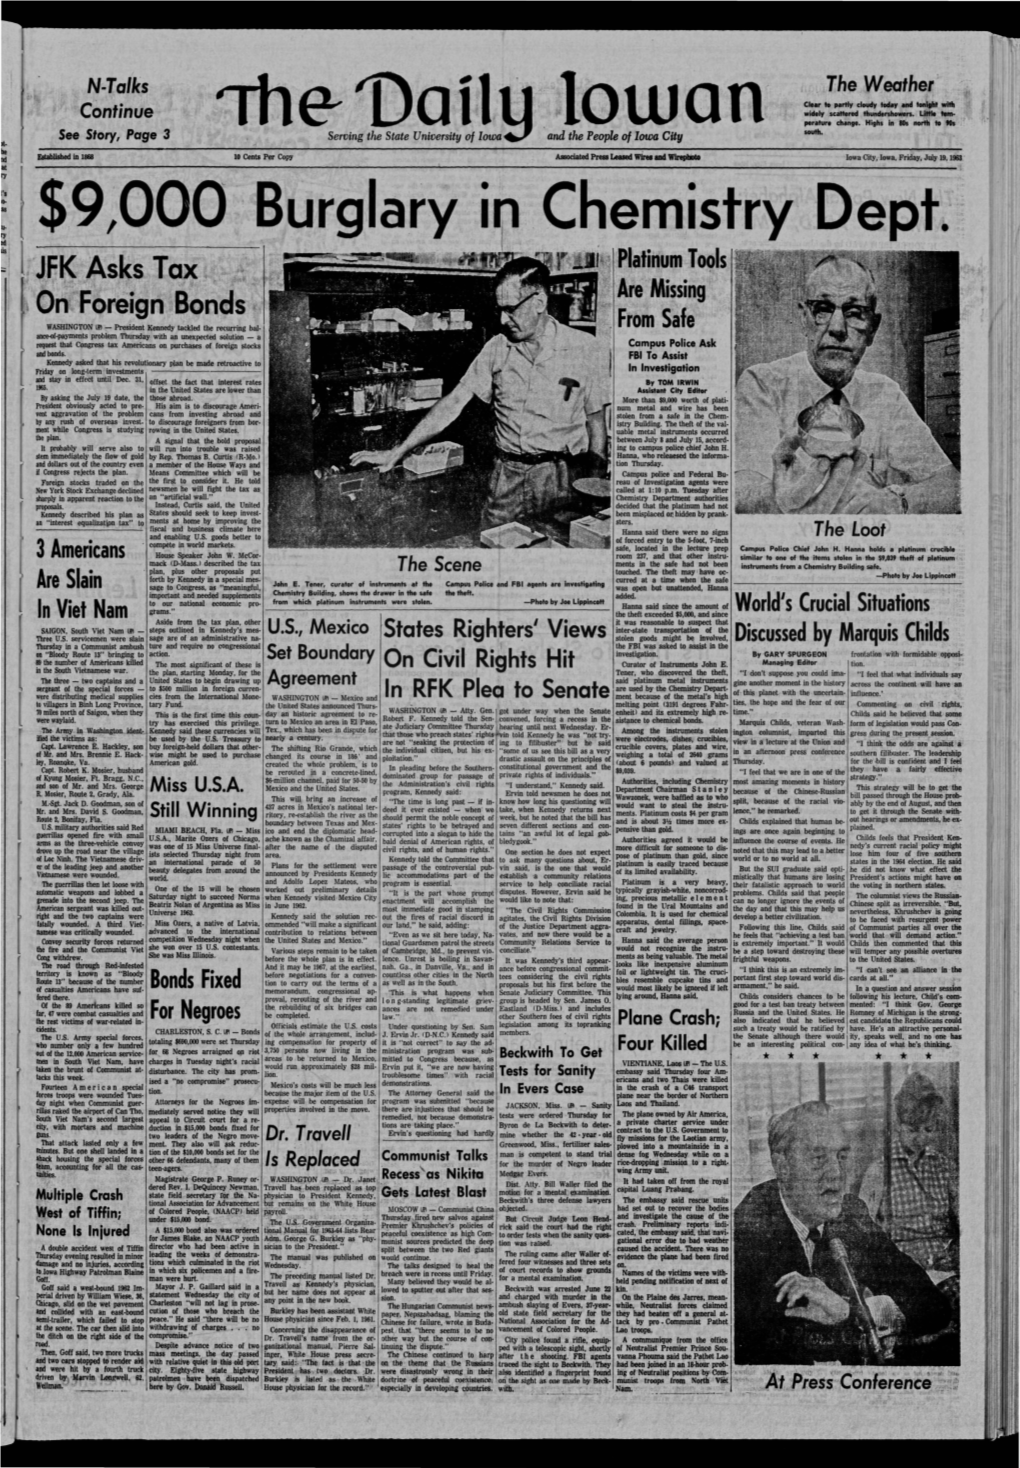 Daily Iowan (Iowa City, Iowa), 1963-07-19